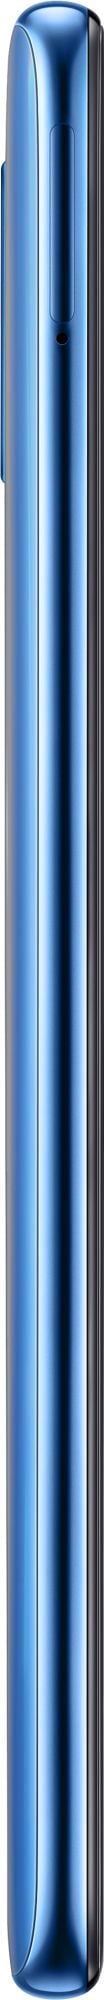 Samsung Galaxy A70 128GB Blue